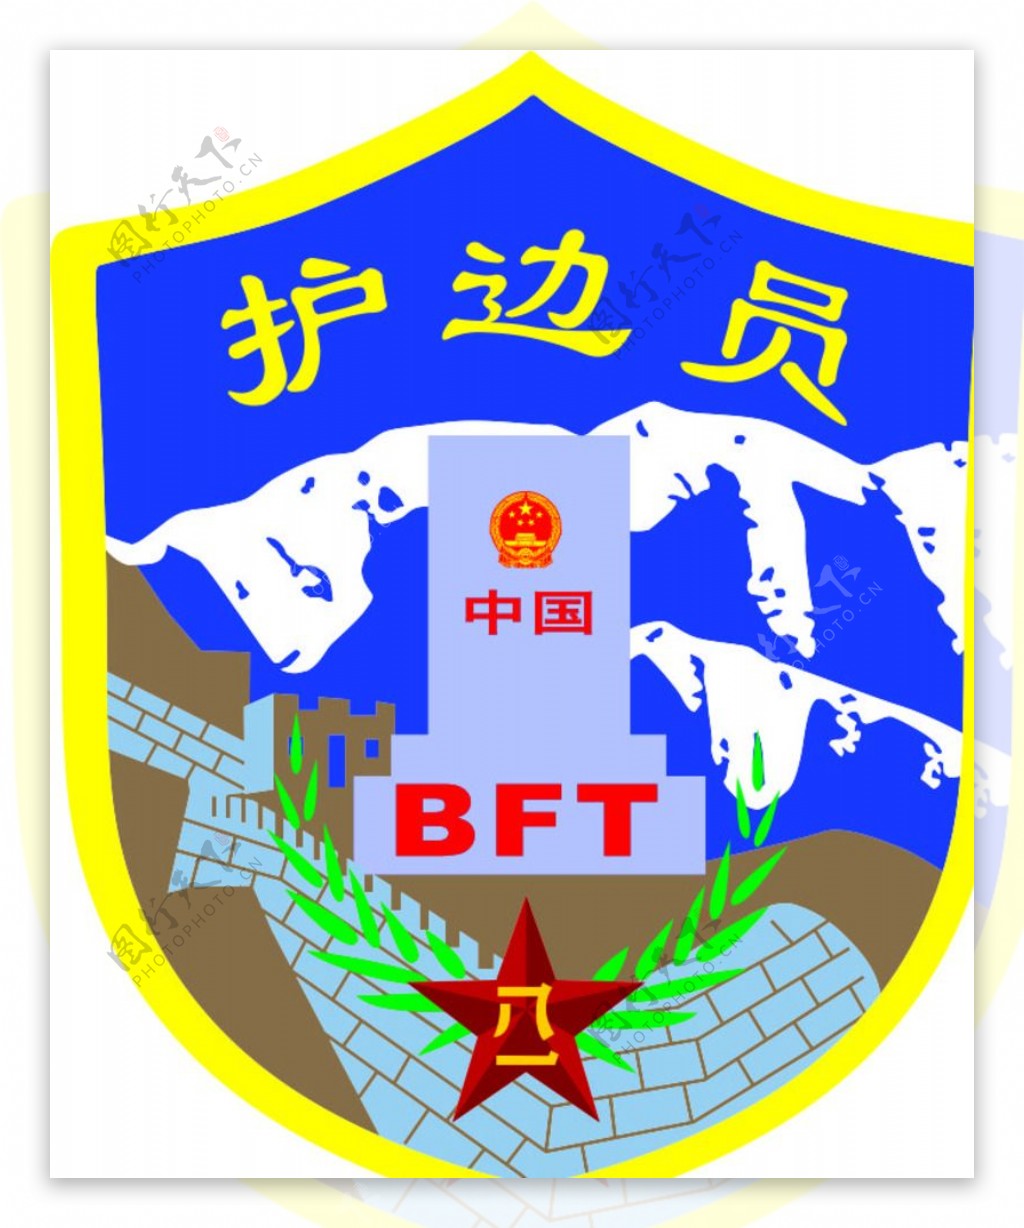 中国护边员BFT徽章